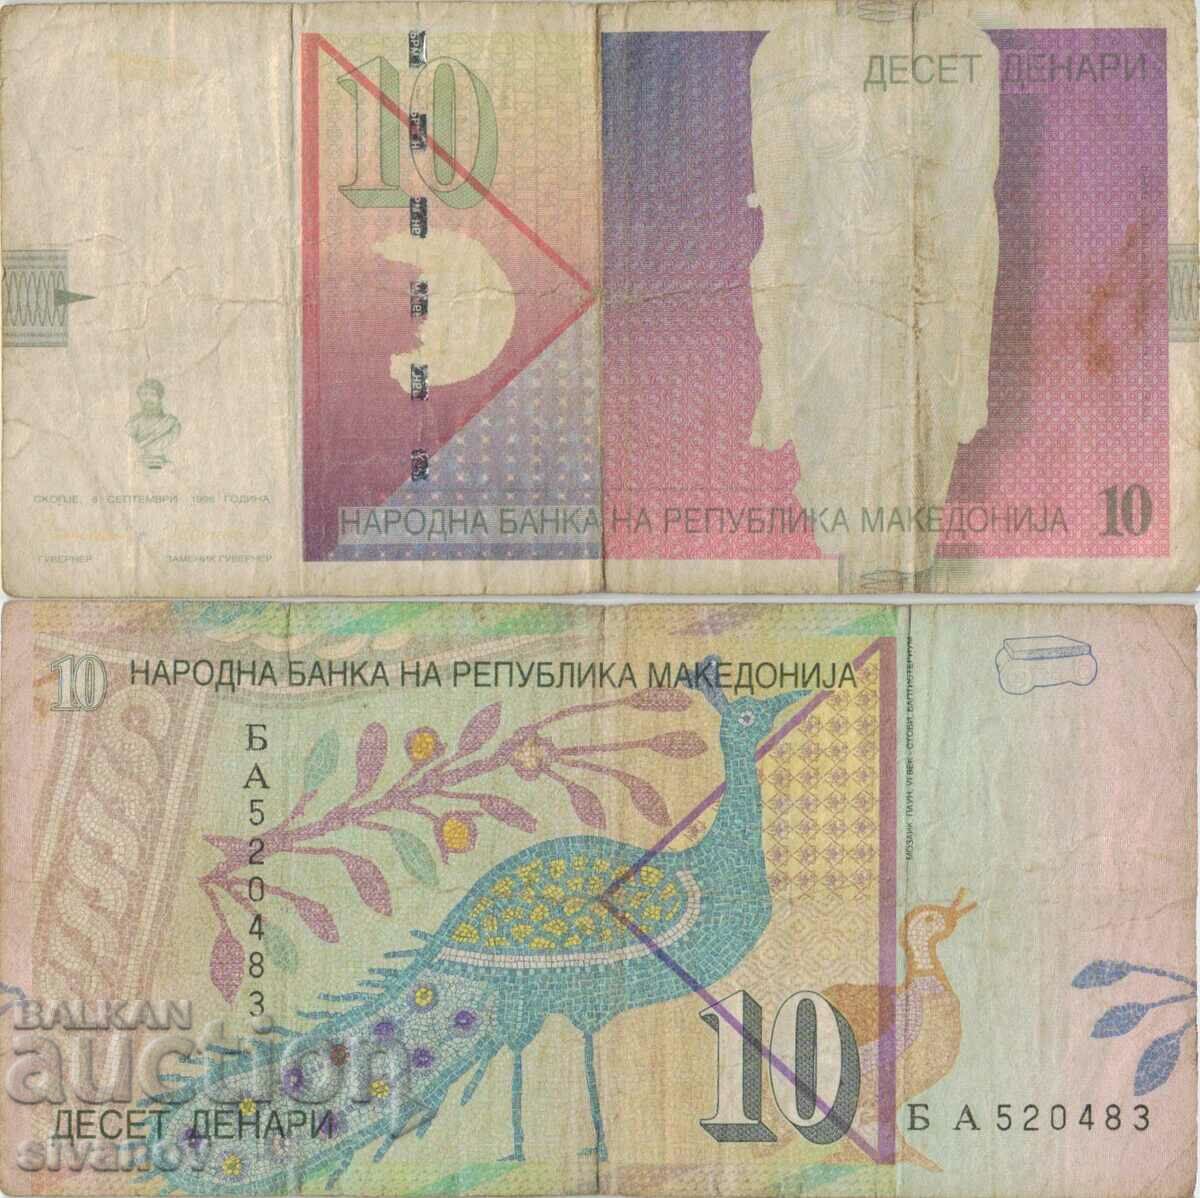 Macedonia 10 denars 1996 banknote #5225